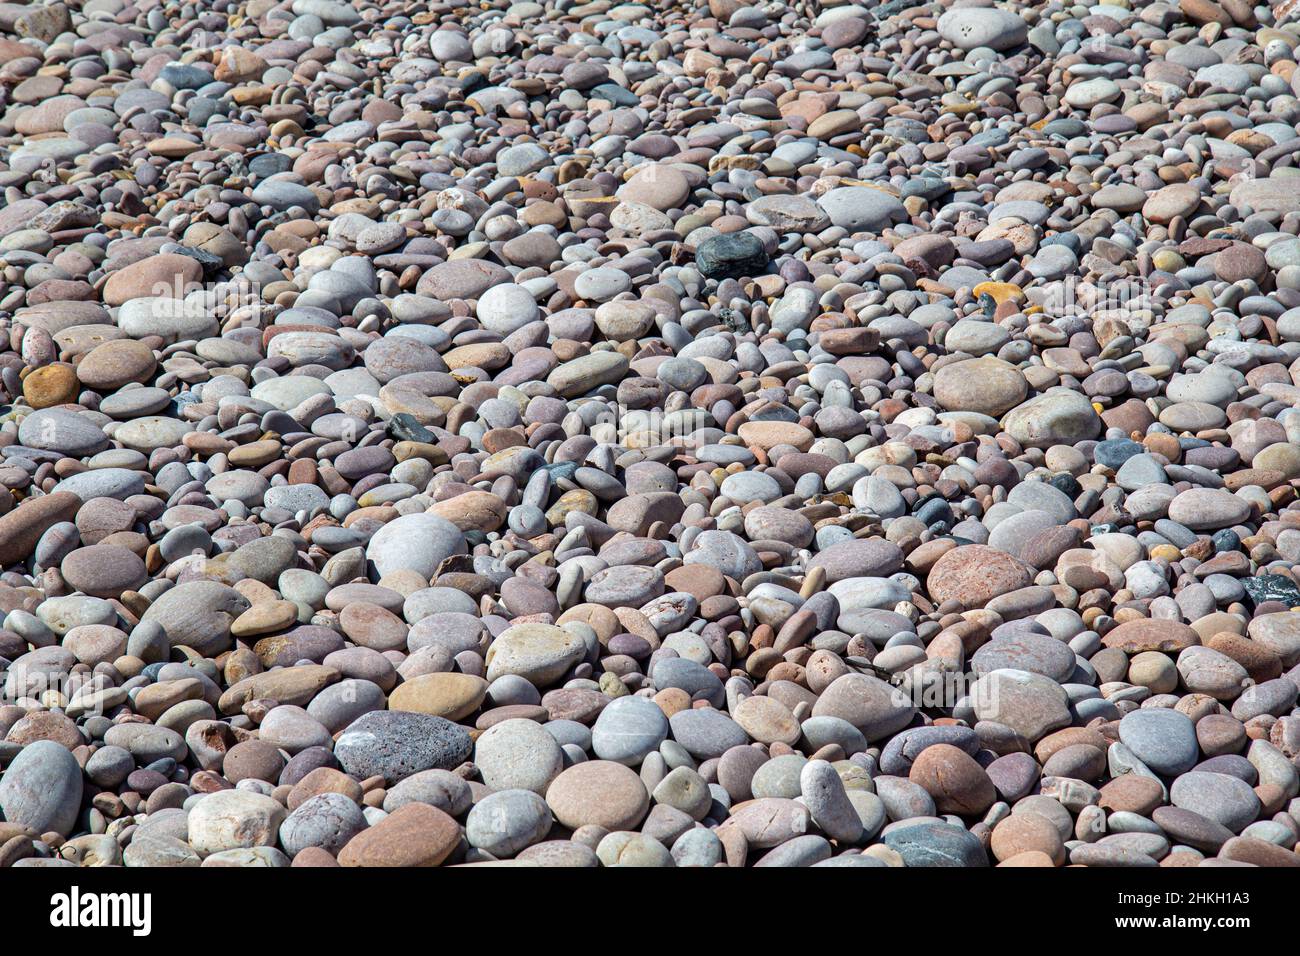 Nahaufnahme von vielen runden und flachen Kieselsteinen am Strand. Kieselsteine in verschiedenen Farben am Strand. Stockfoto